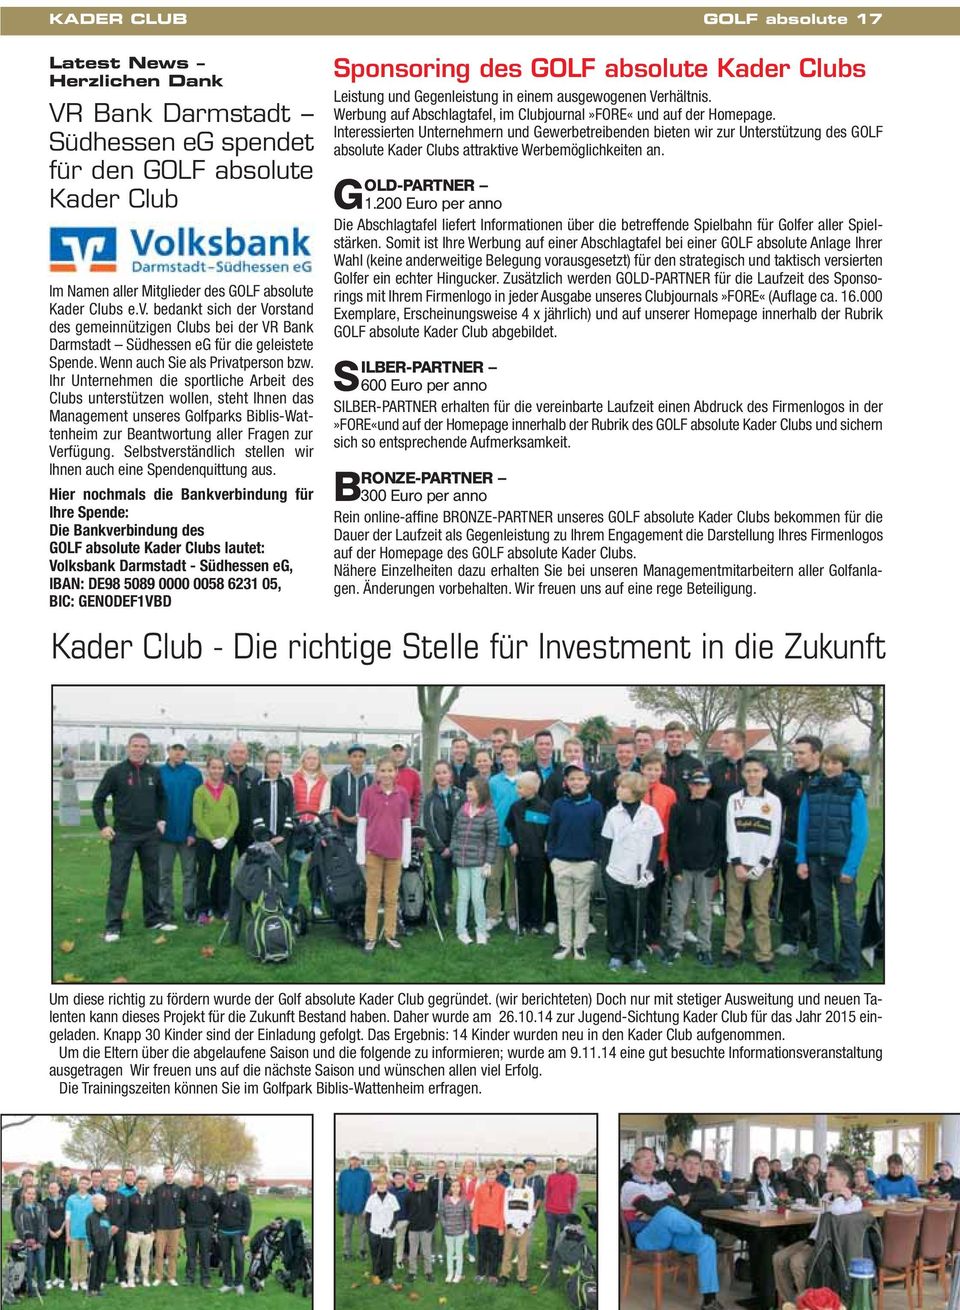 Ihr Unternehmen die sportliche Arbeit des Clubs unterstützen wollen, steht Ihnen das Management unseres Golfparks Biblis-Wattenheim zur Beantwortung aller Fragen zur Verfügung.